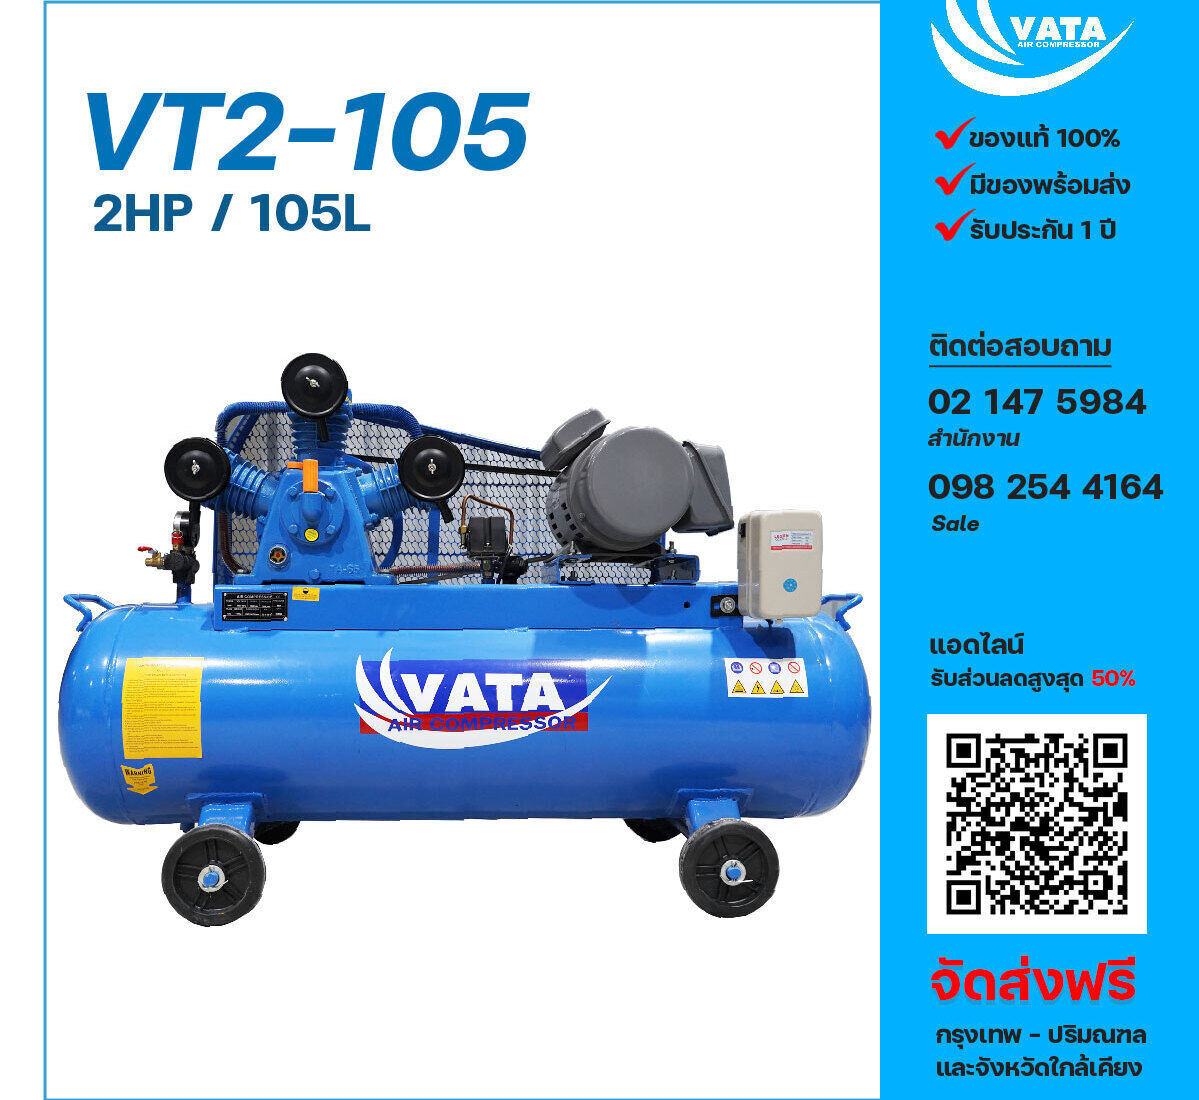 ปั๊มลมวาตะ VATA VT2-105 220V ปั๊มลมลูกสูบ ขนาด 3 สูบ 2 แรงม้า 105 ลิตร VATA พร้อมมอเตอร์ ไฟ 220V ส่งฟรี กรุงเทพฯ-ปริมณฑล รับประกัน 1 ปี